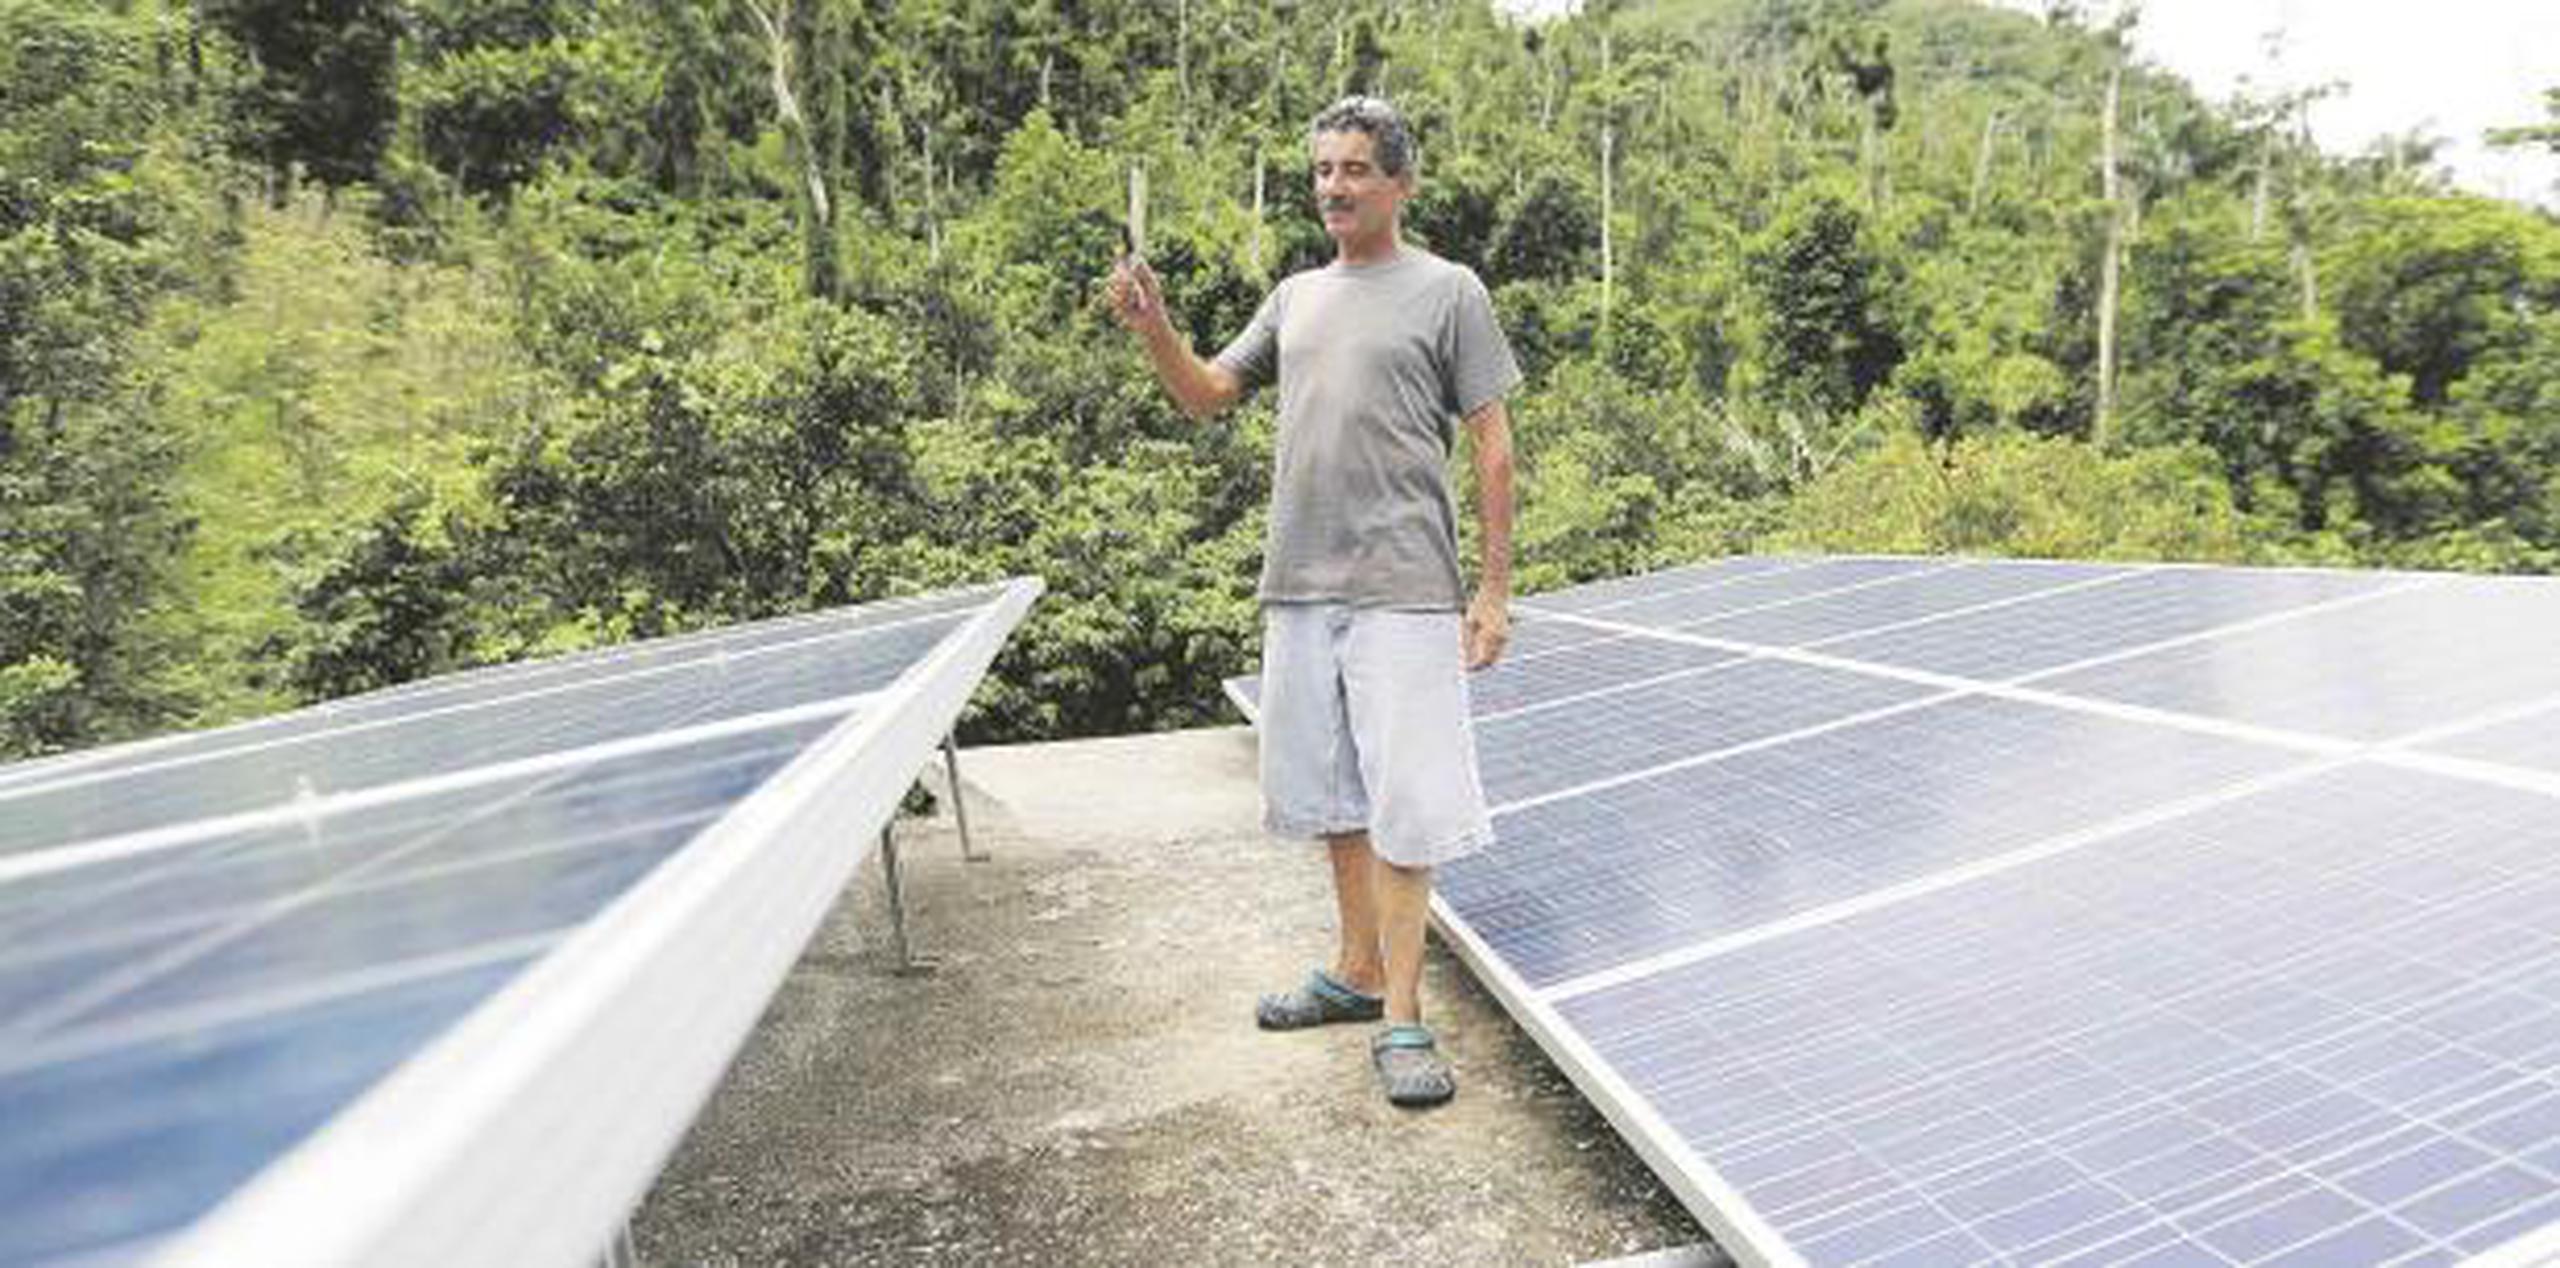 Carmelo Burgos recuerda lo duro que fueron los ocho meses que estuvo sin el servicio de energía. Hoy agradece la iniciativa de contar con una fuente solar de electricidad. (teresa.canino@gfrmedia.com)